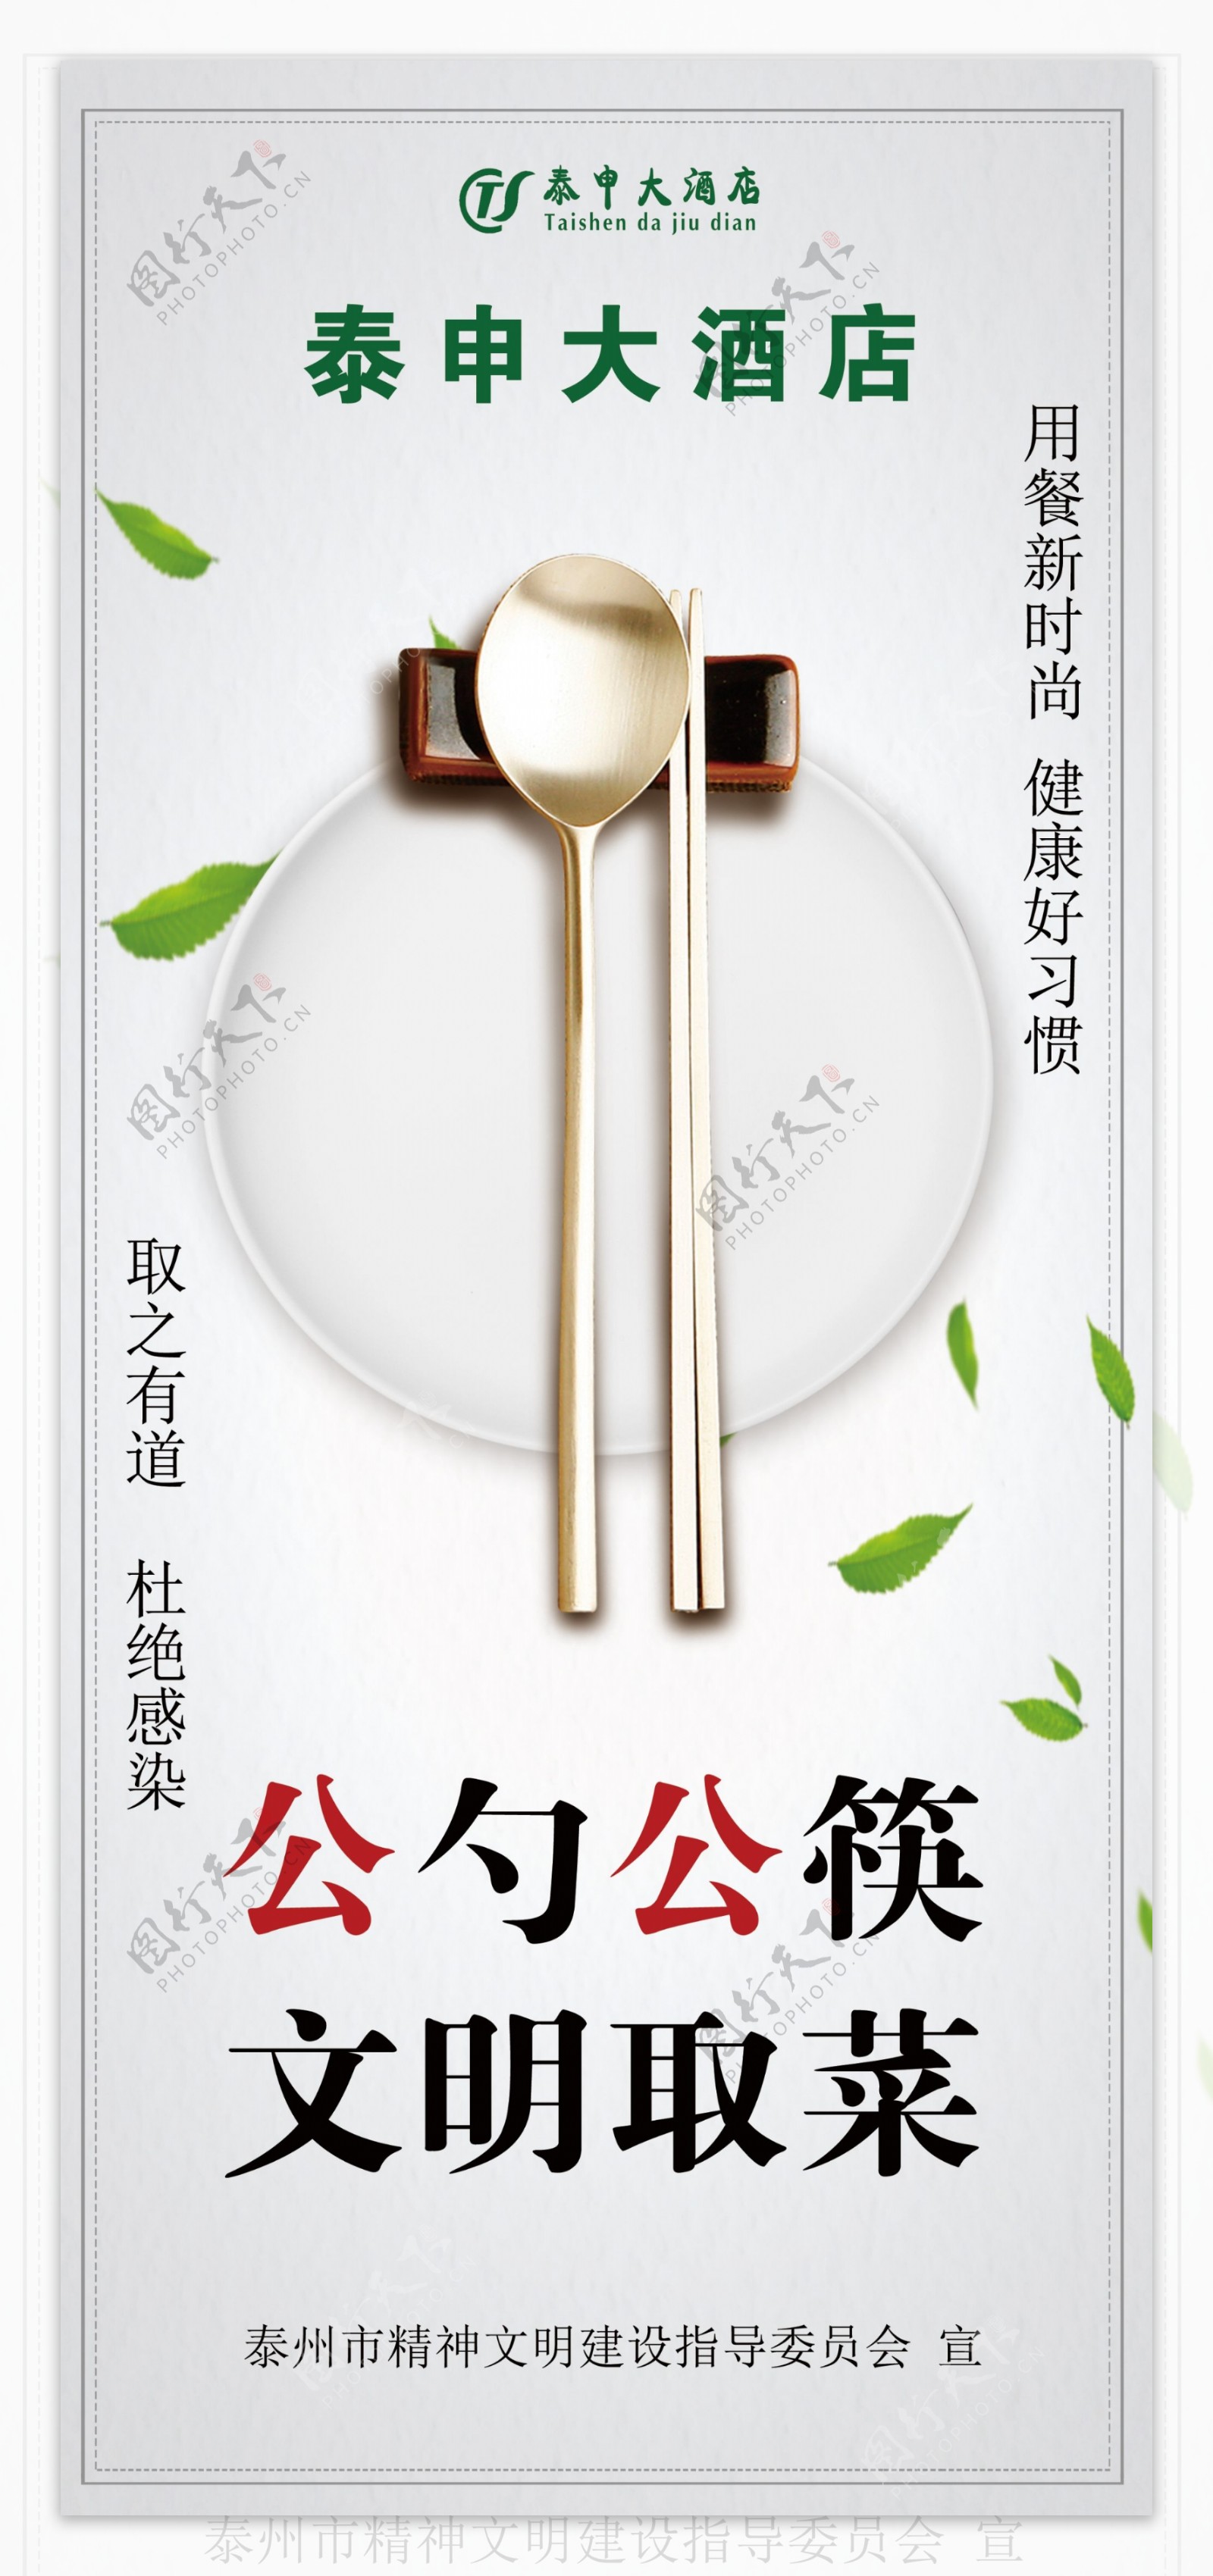 文明公筷公勺